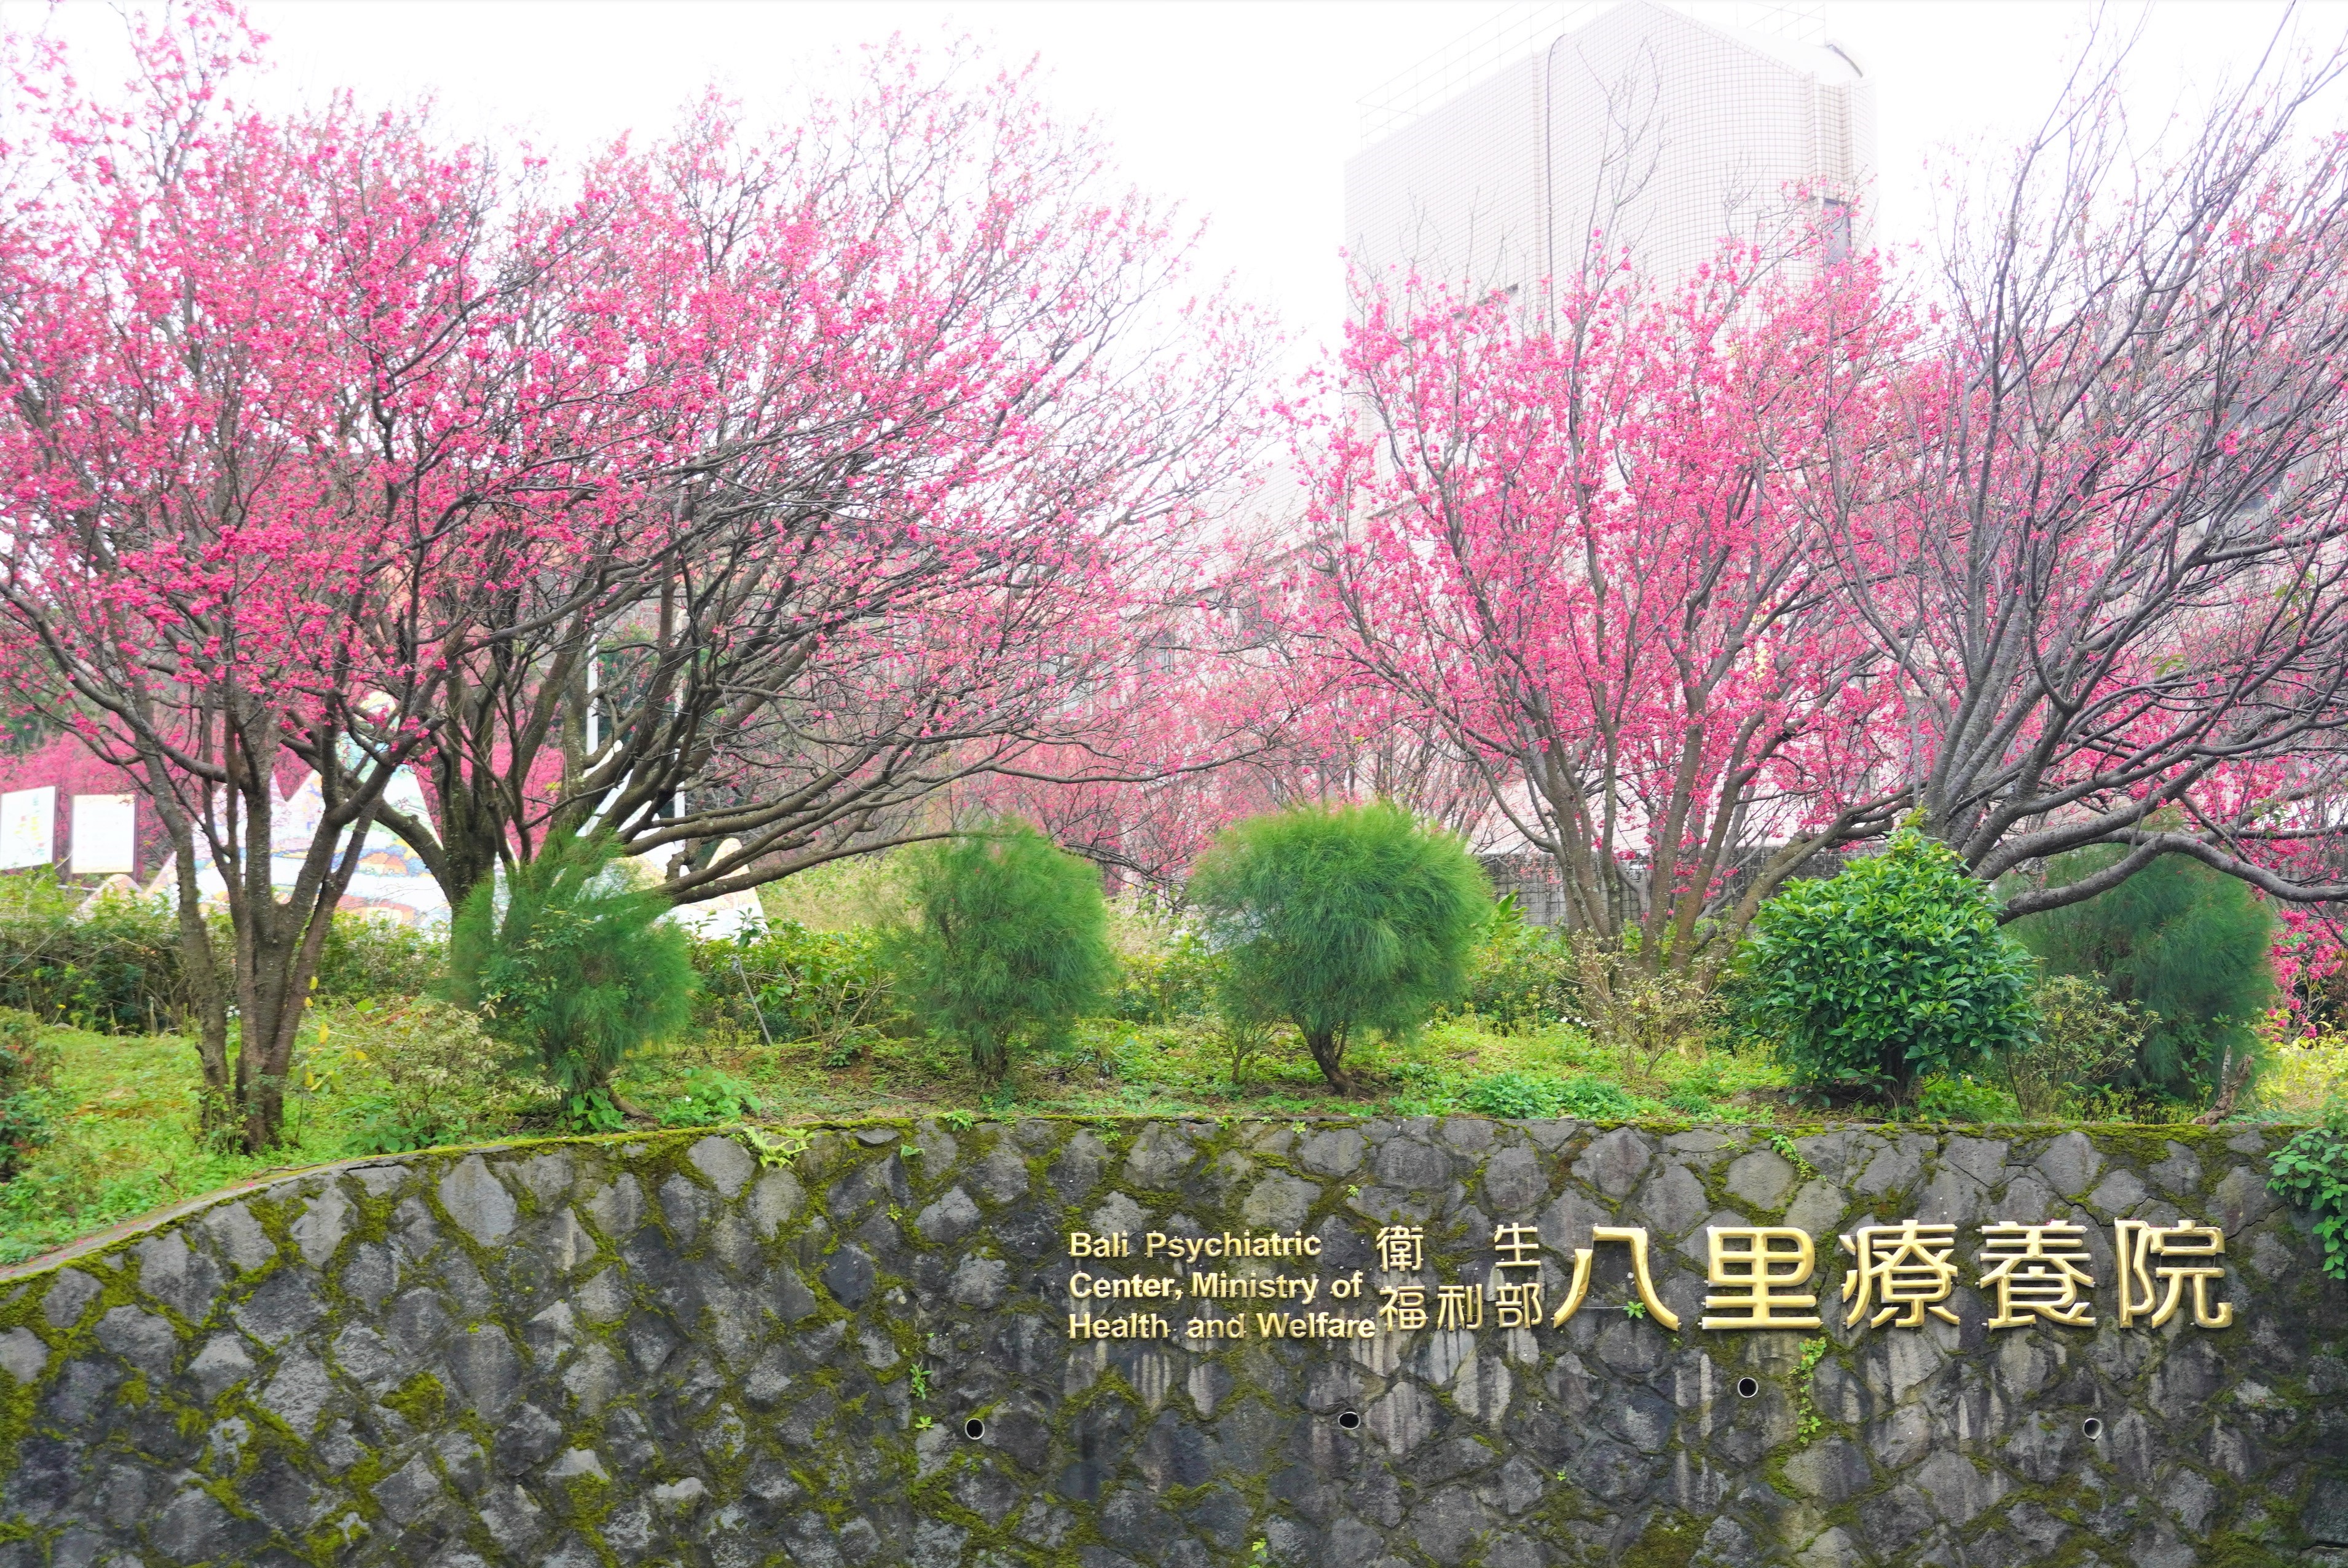 八里療養院一直是新北的賞櫻秘境，園區內櫻以山櫻花與八重櫻為最主